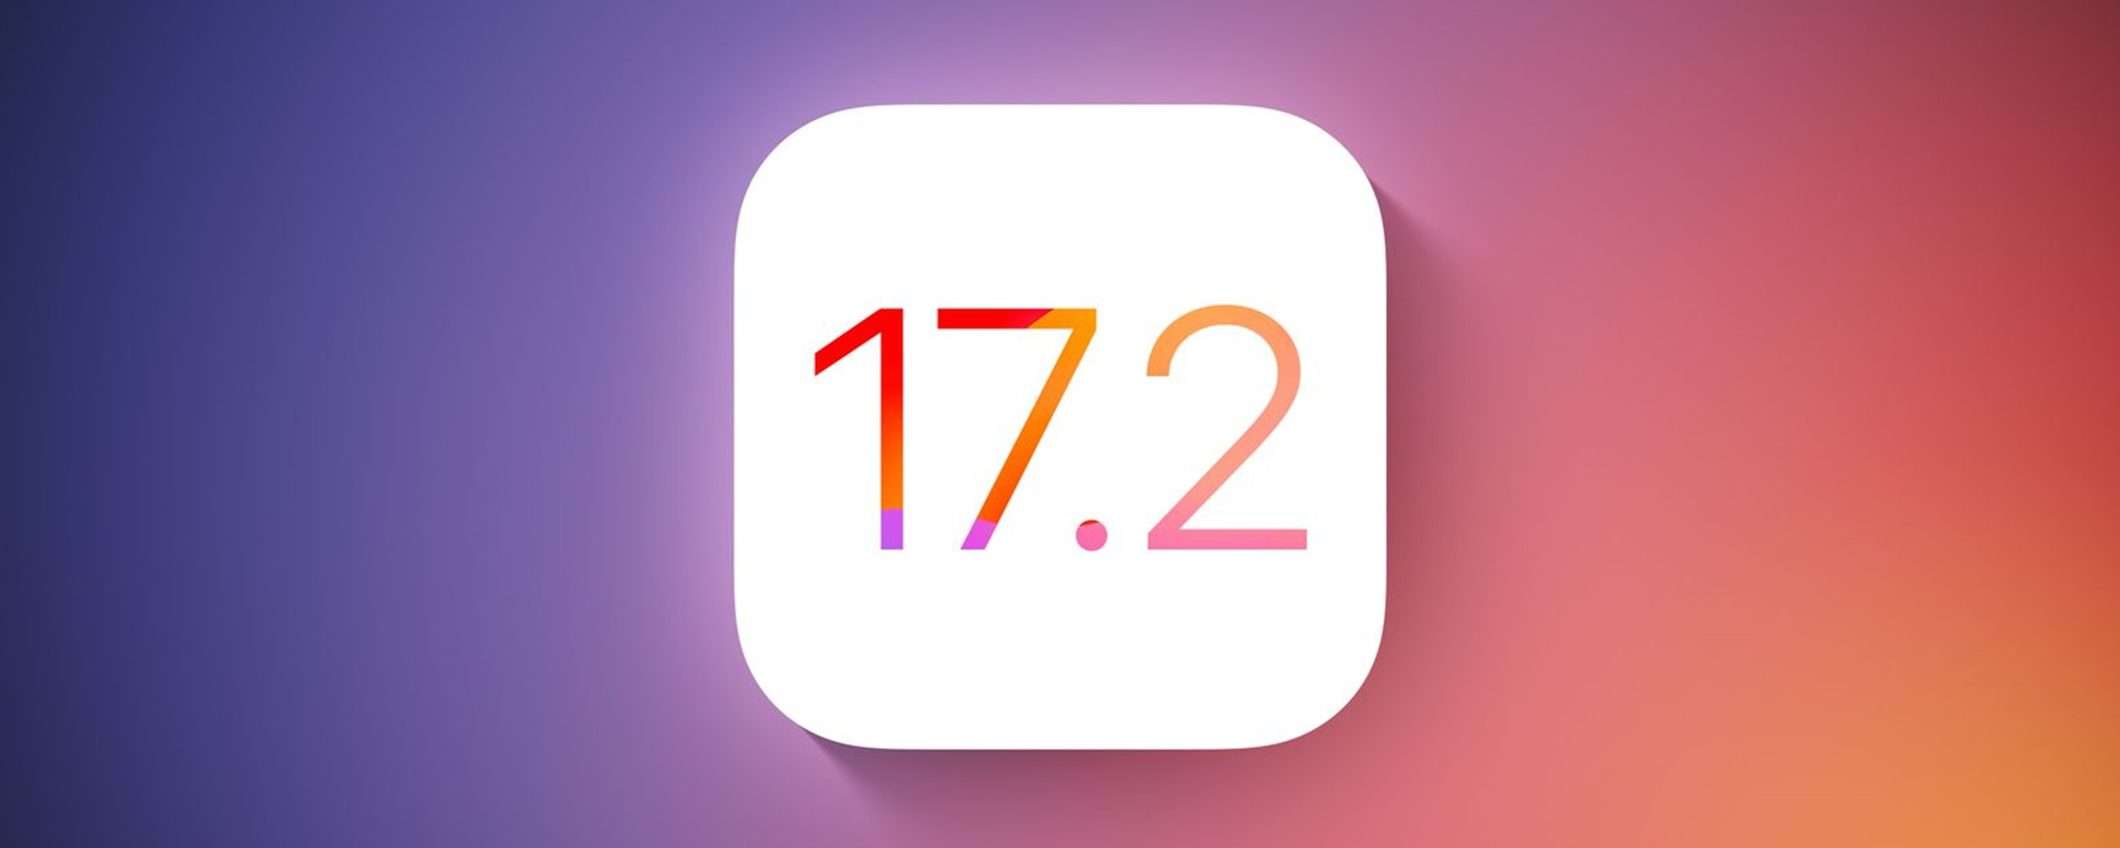 Apple iOS 17.2: Journal, supporto Qi2 e altre novità